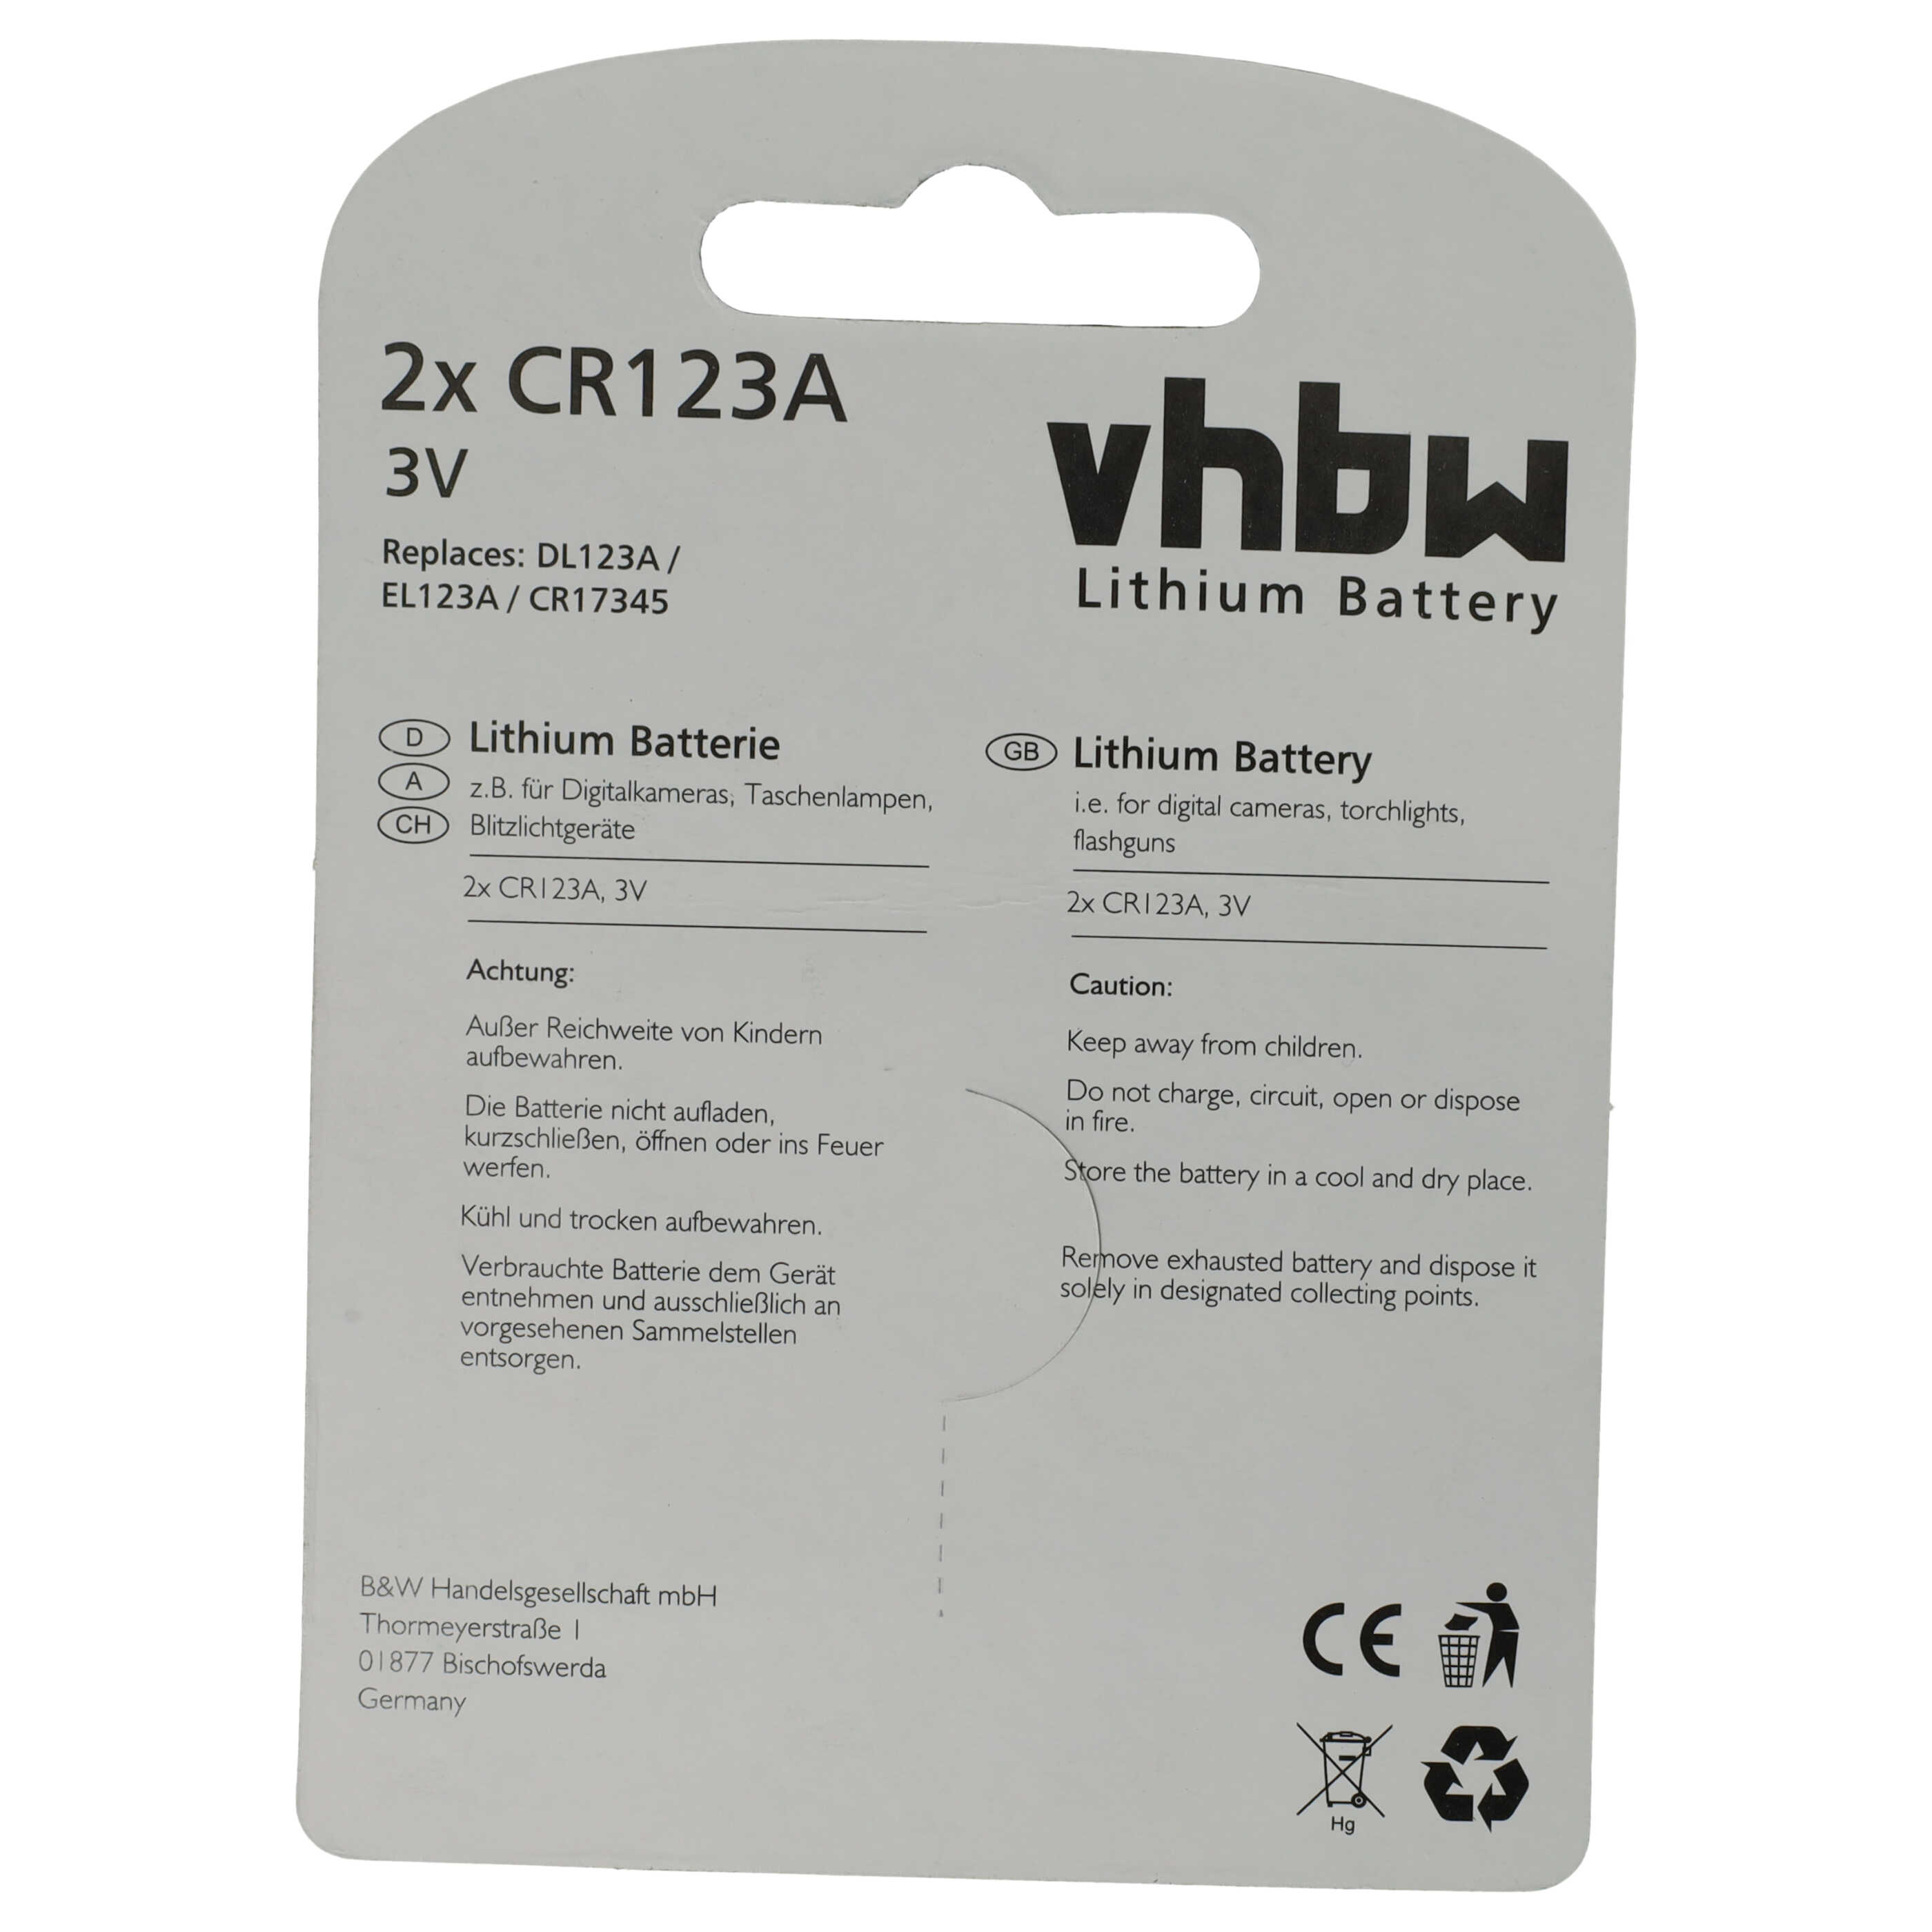 Universal Batterie (2 Stück) als Ersatz für 16340, CR17435, DL123A, CR17345, CR123A - 1600mAh 3V Li-Ion